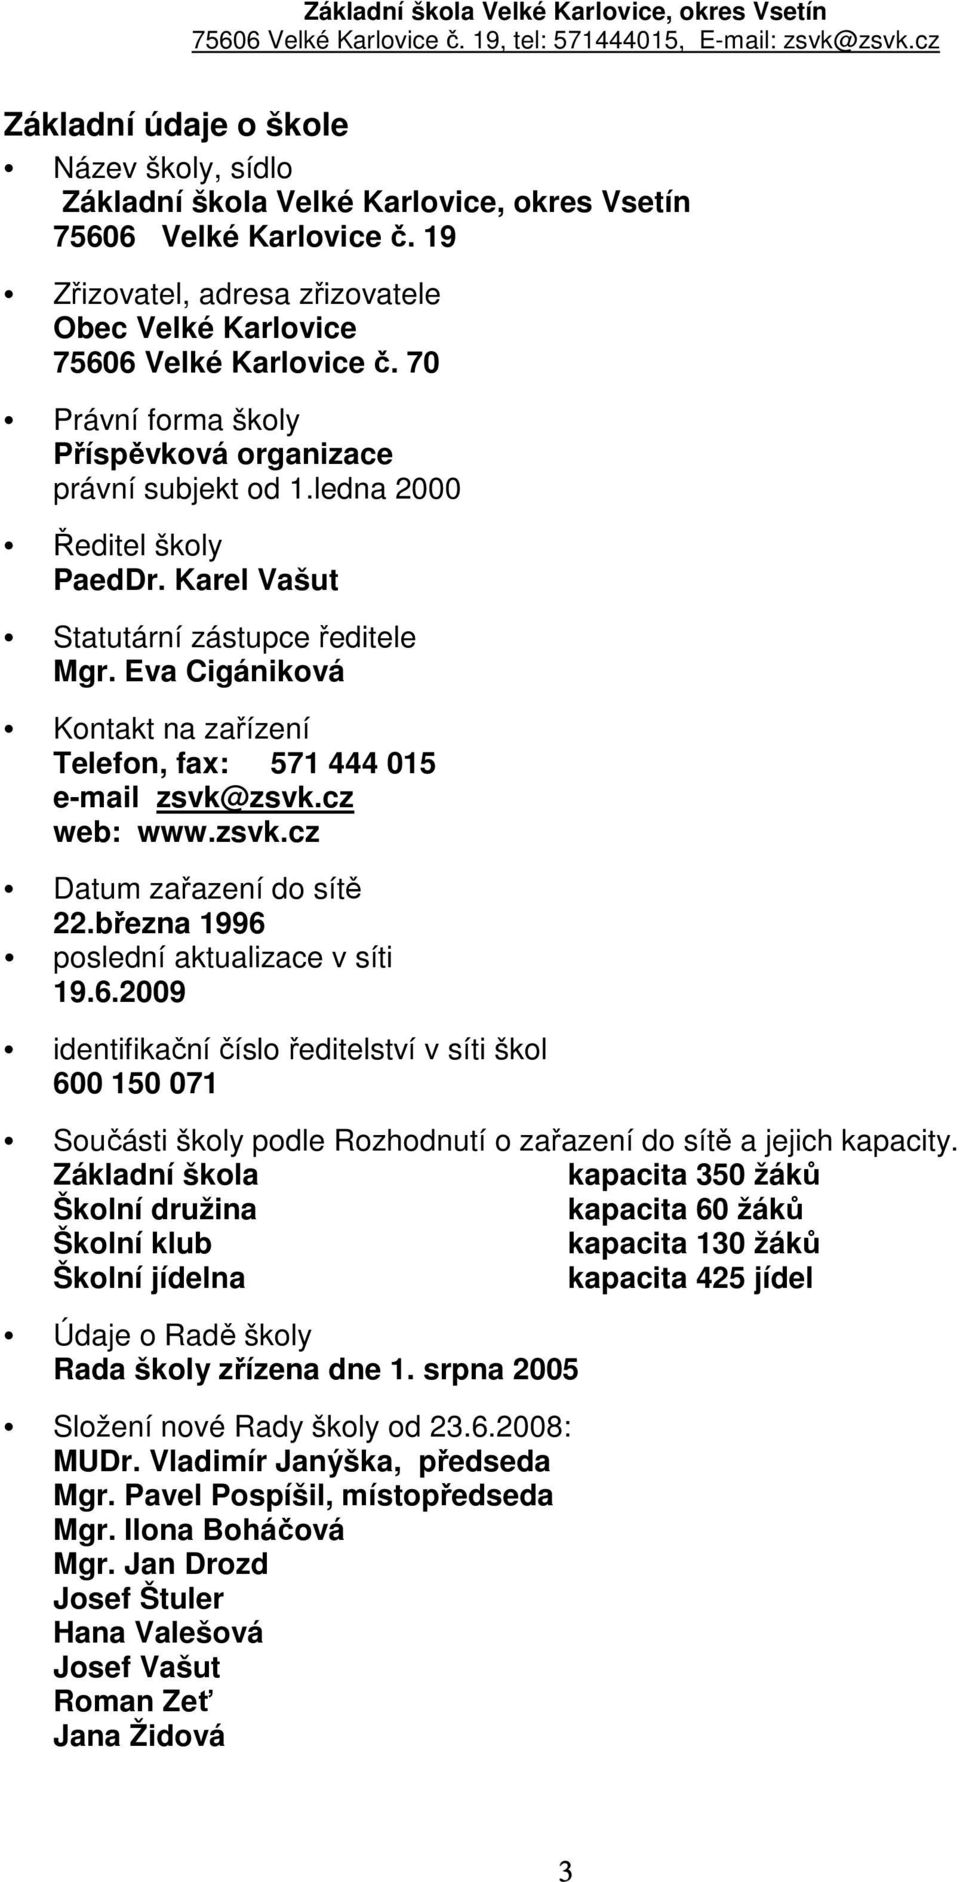 Eva Cigániková Kontakt na zařízení Telefon, fax: 571 444 015 e-mail zsvk@zsvk.cz web: www.zsvk.cz Datum zařazení do sítě 22.března 1996 